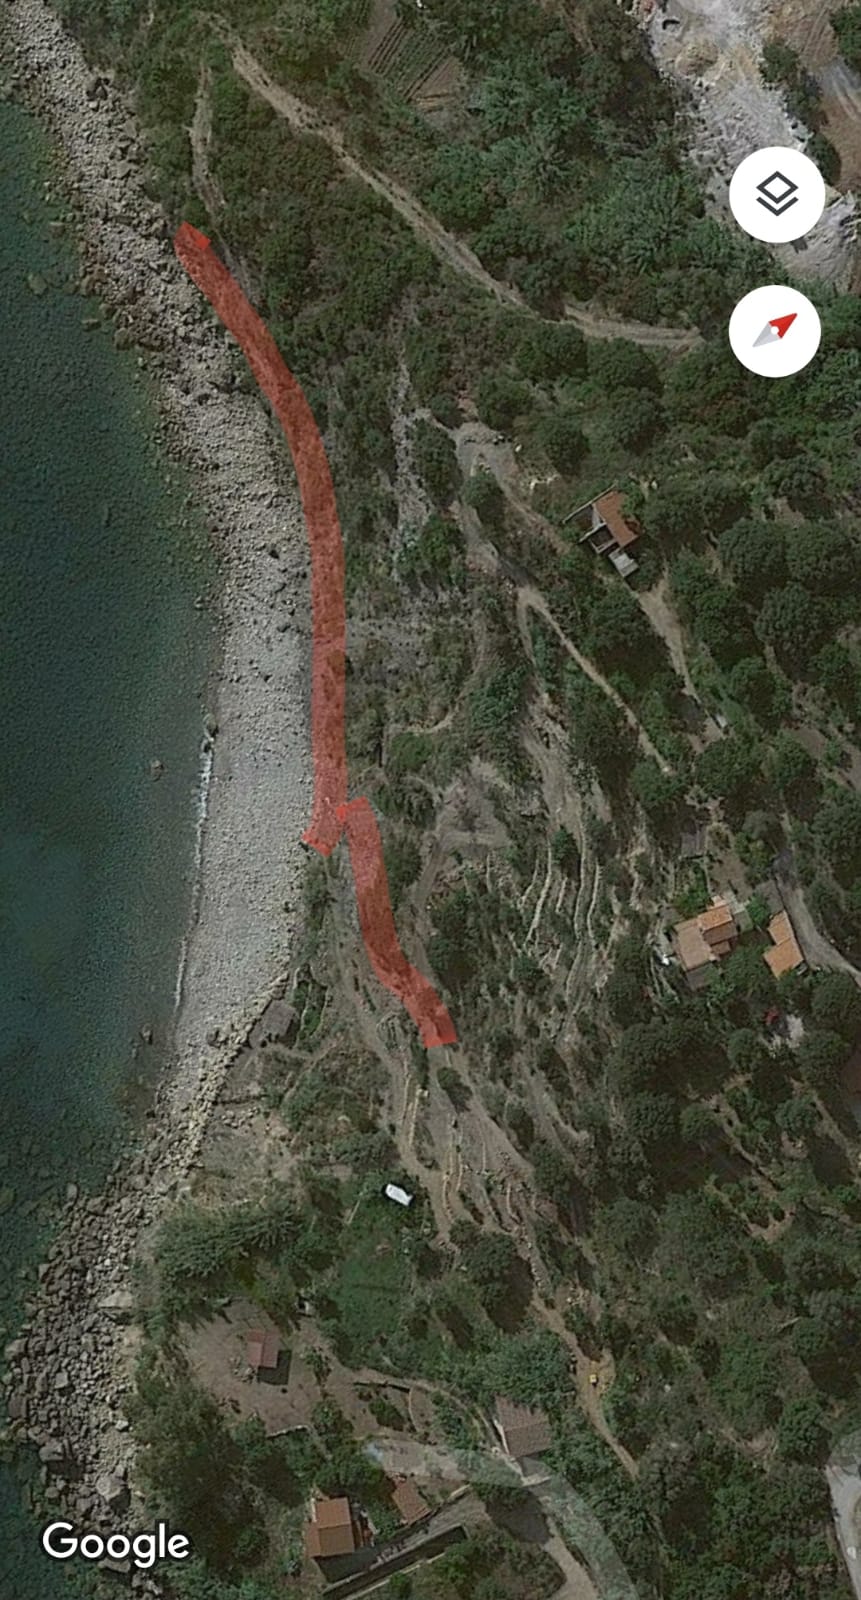 Realizzano tracciato stradale sulla spiaggia a Caprioli: denuncia e sequestro